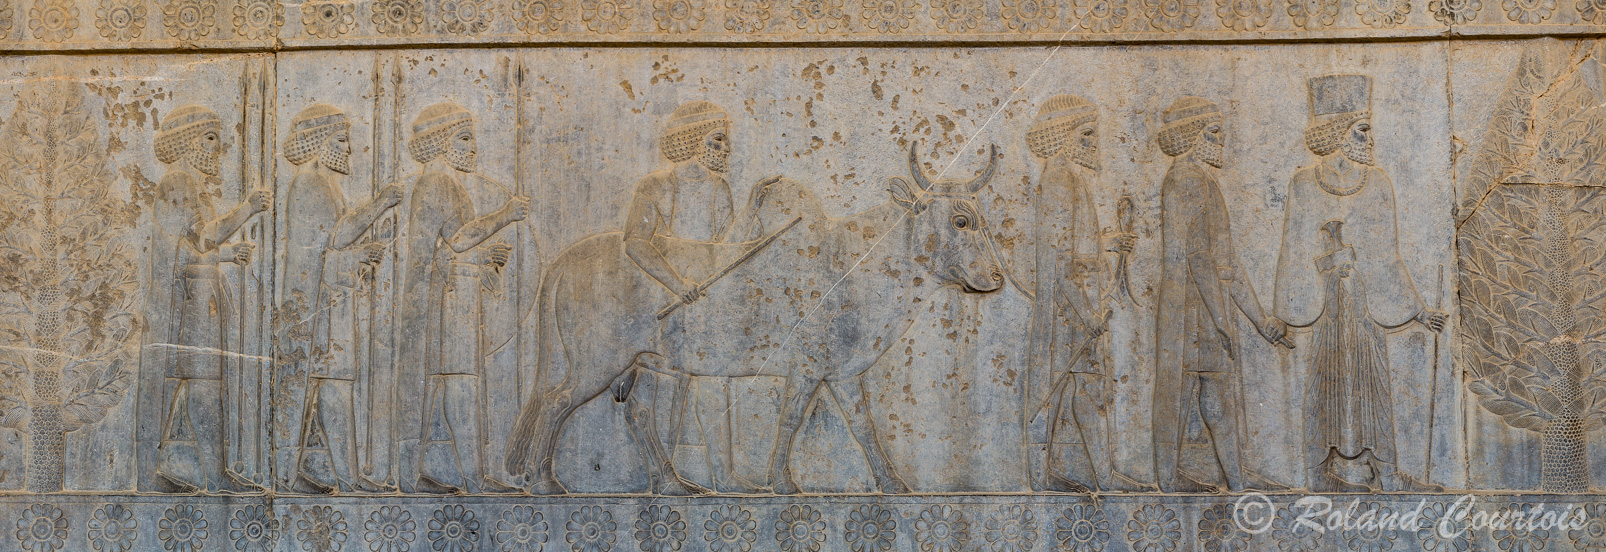 Persepolis :  Frise des Tributaires, Les Gandhariens, avec buffle, lances et bouclier.